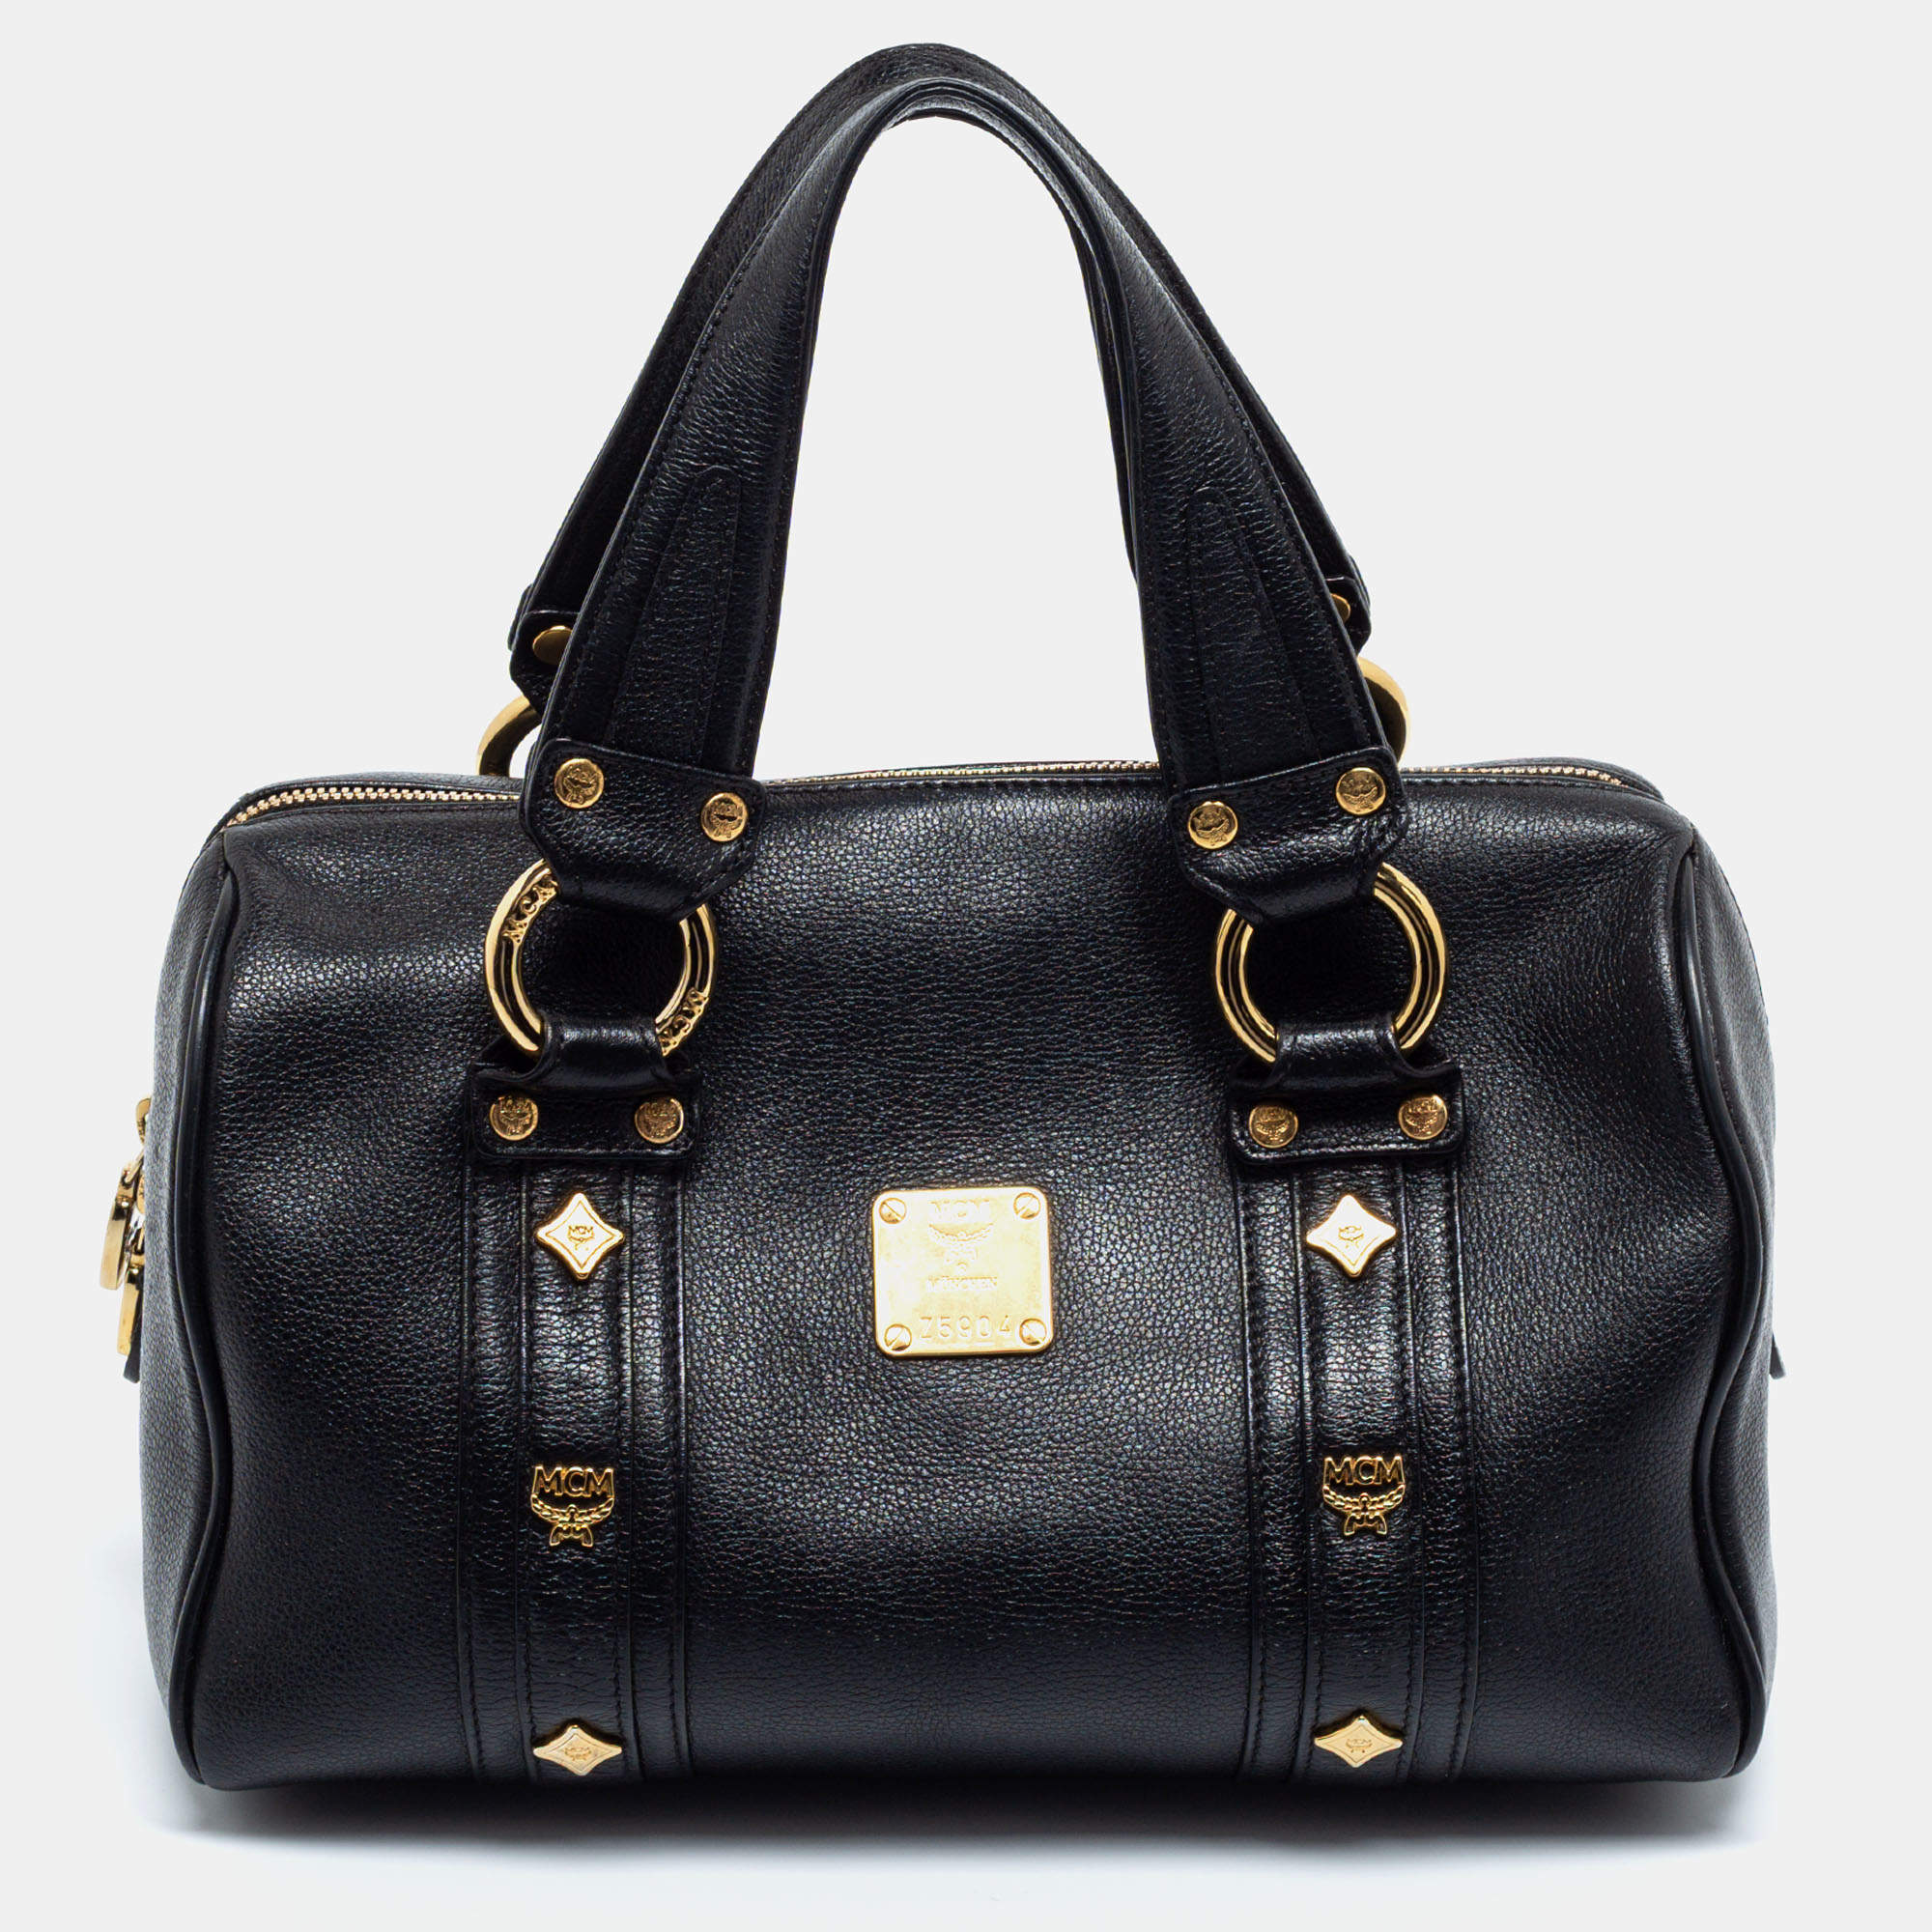 MCM Shoulder Bag, Vintage, Black, Canvas Suede, Good Condition